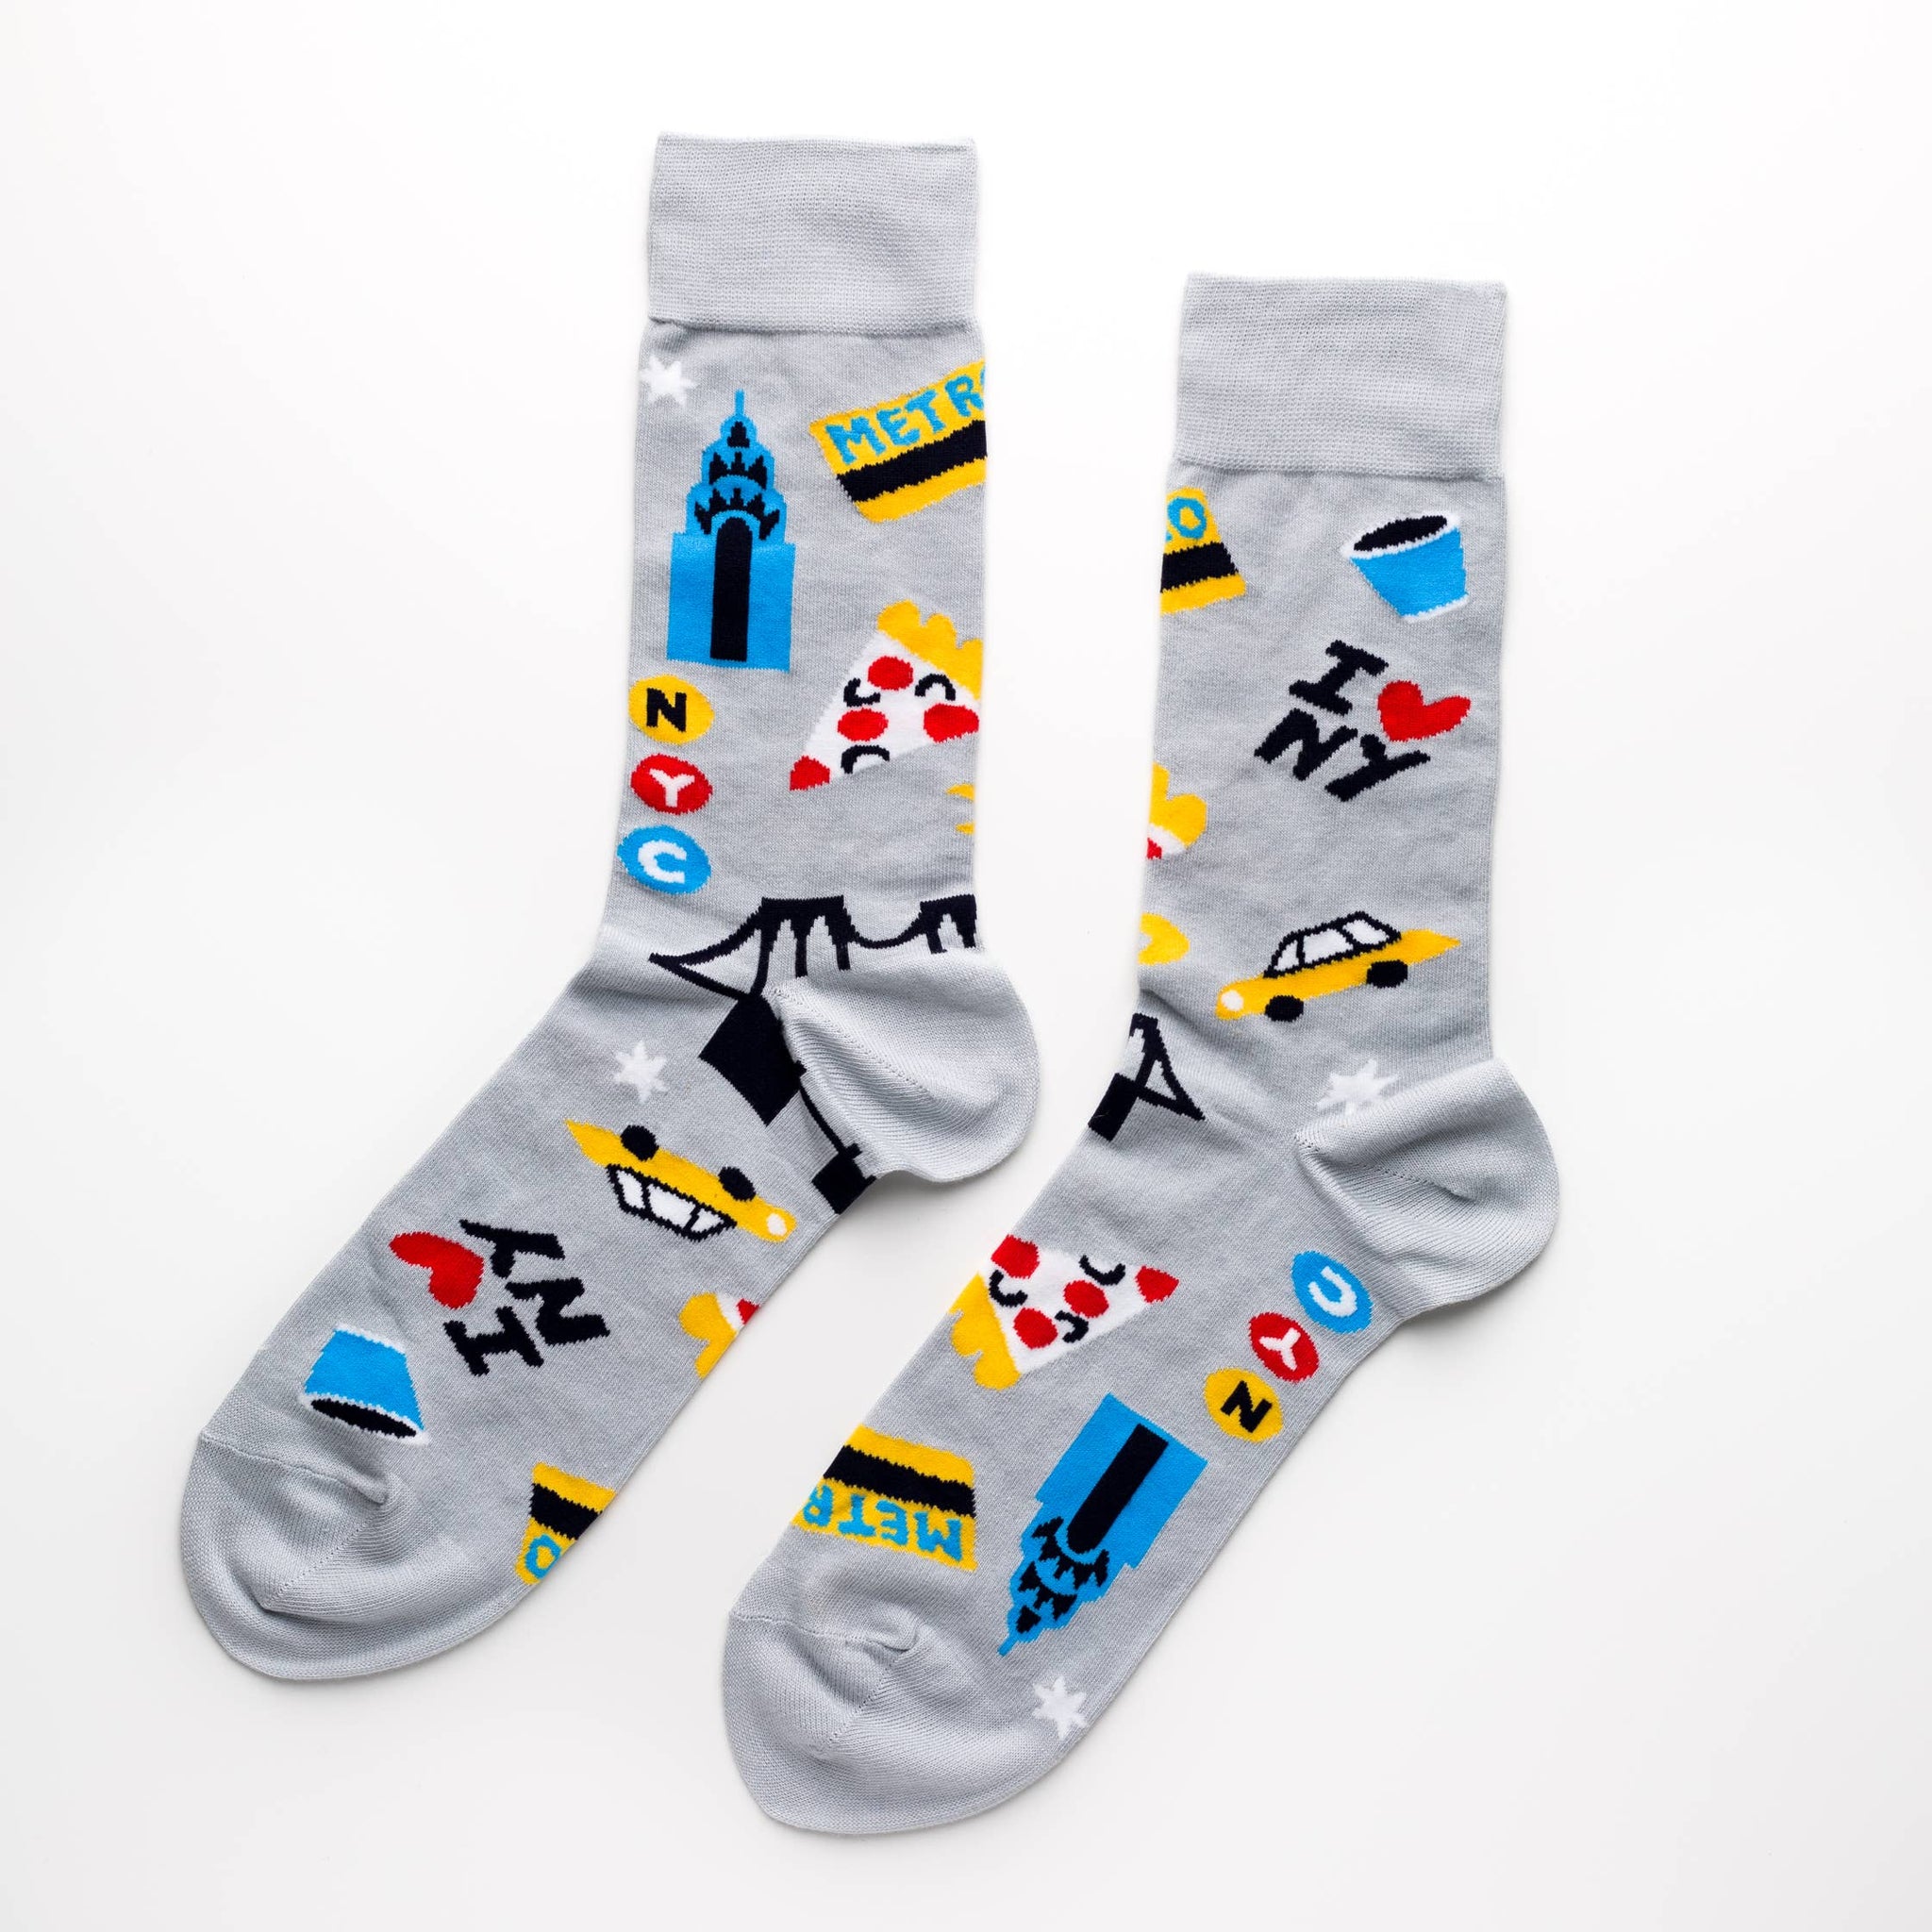 New York City - Men's Socks